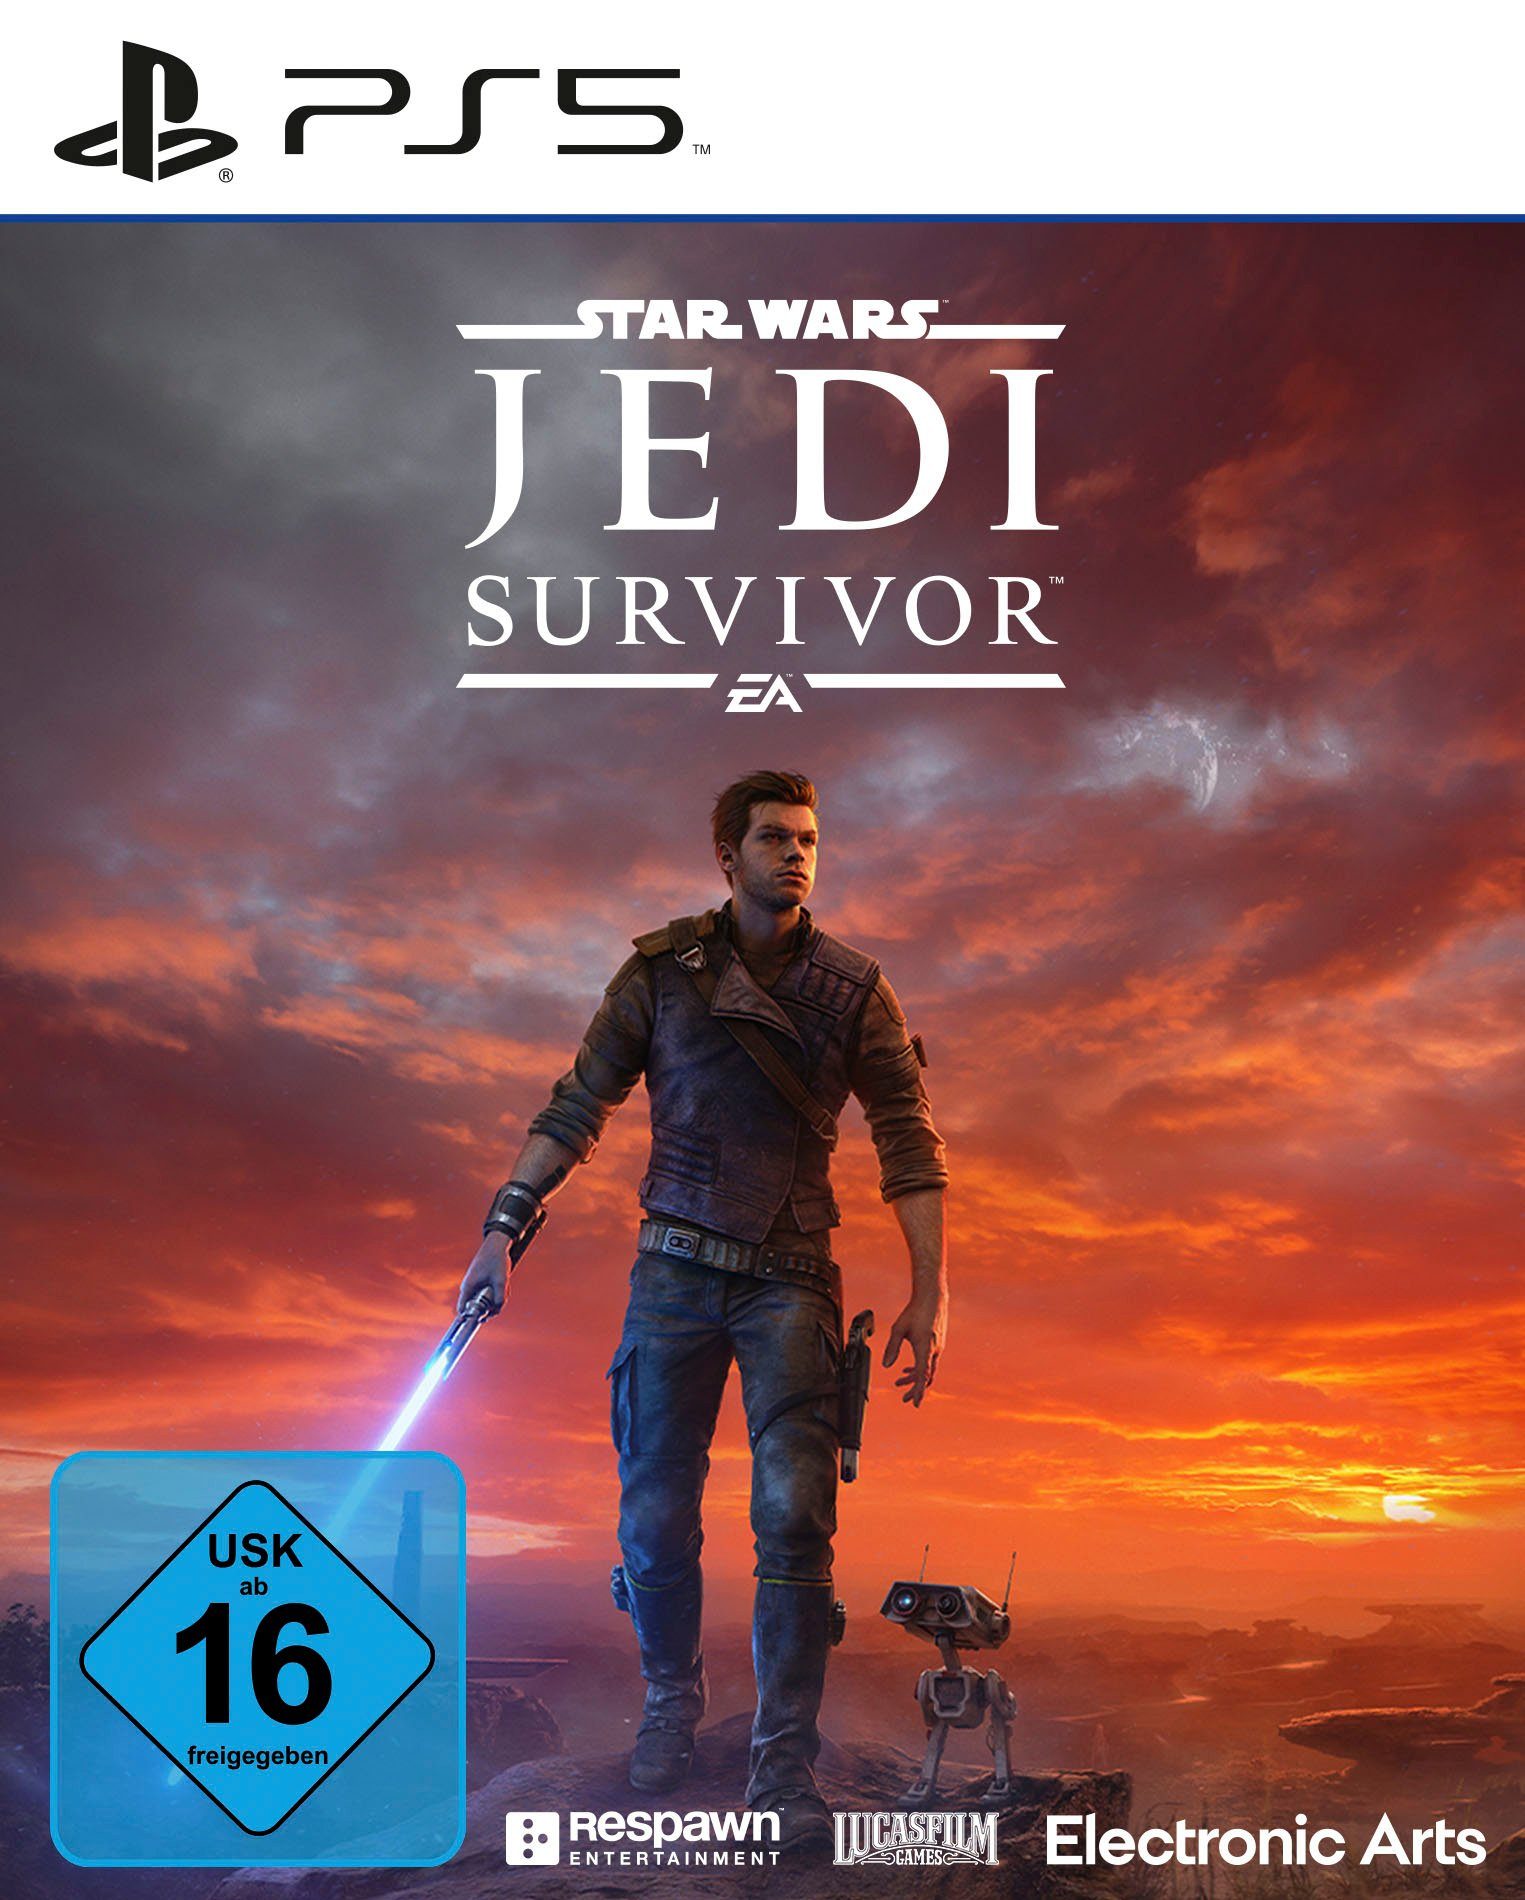 PlayStation Wars: Star EA 5 Survivor Jedi